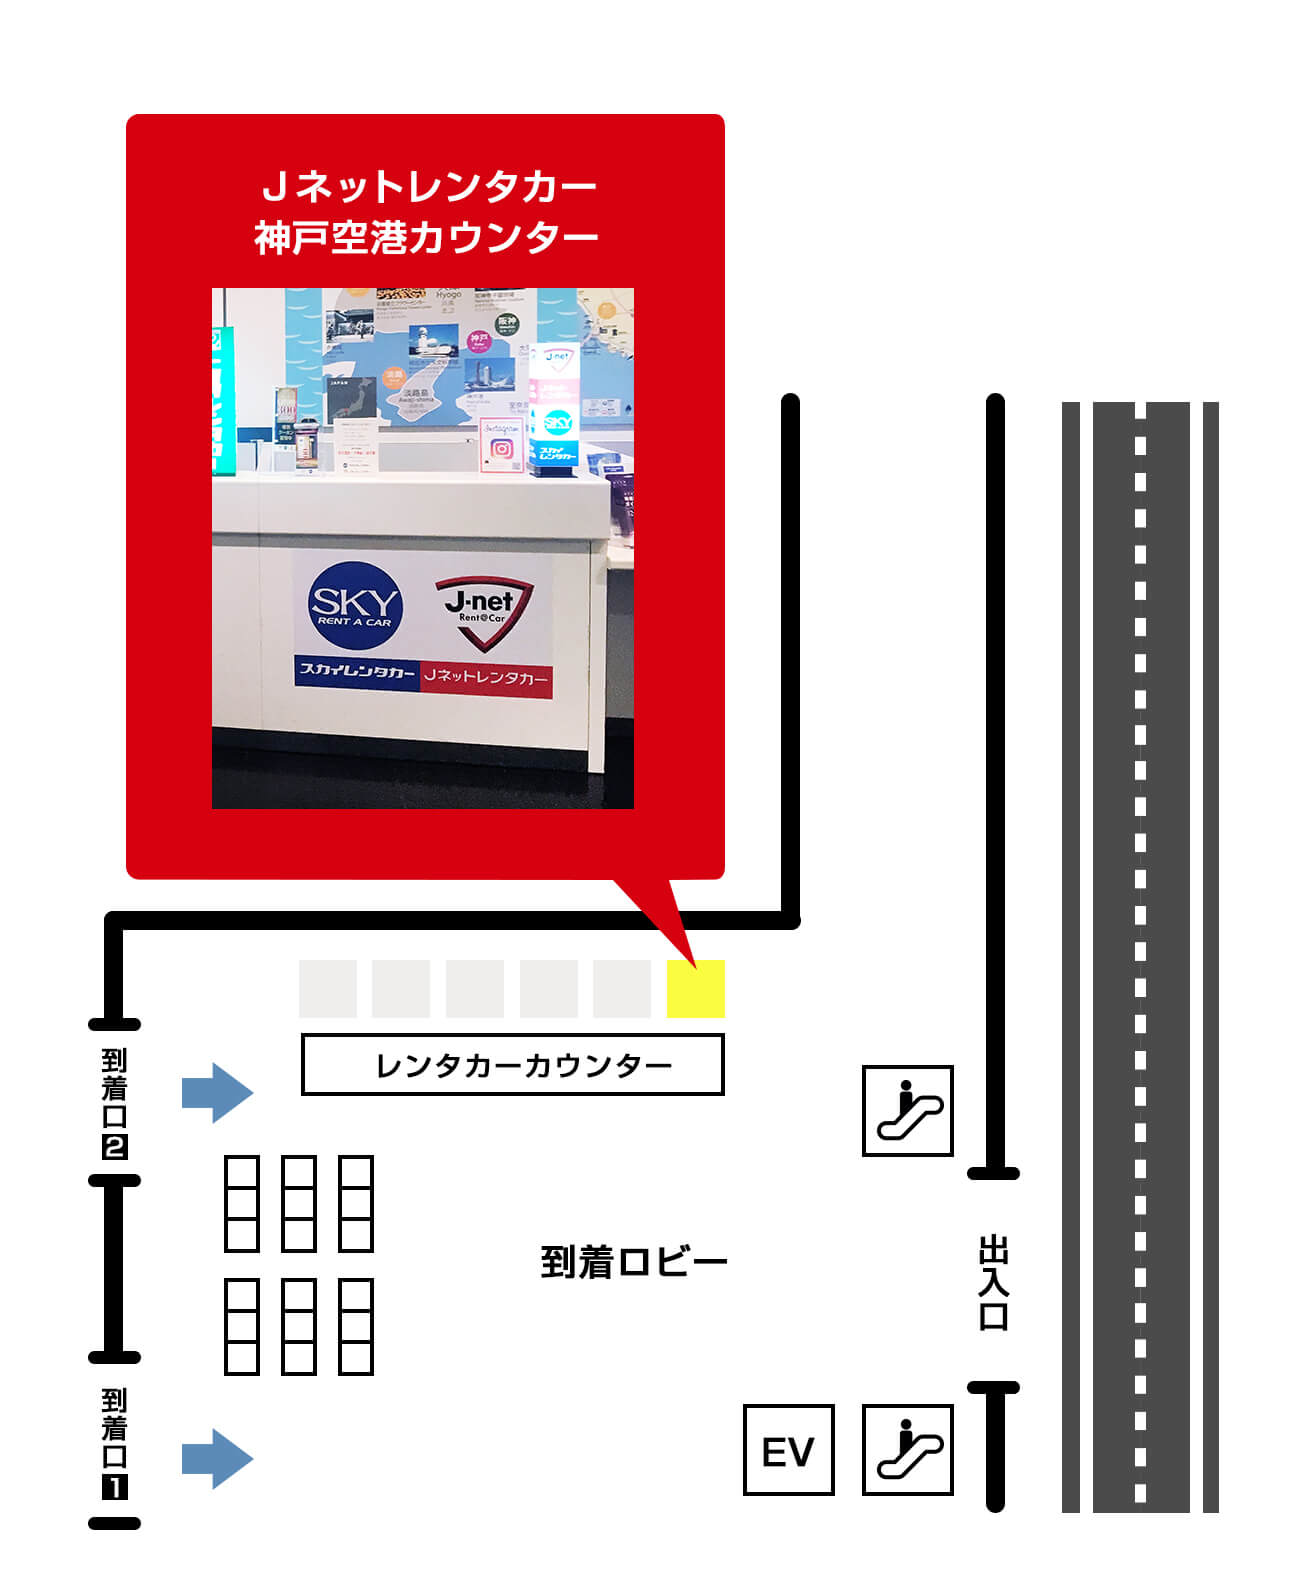 神戸空港カウンター